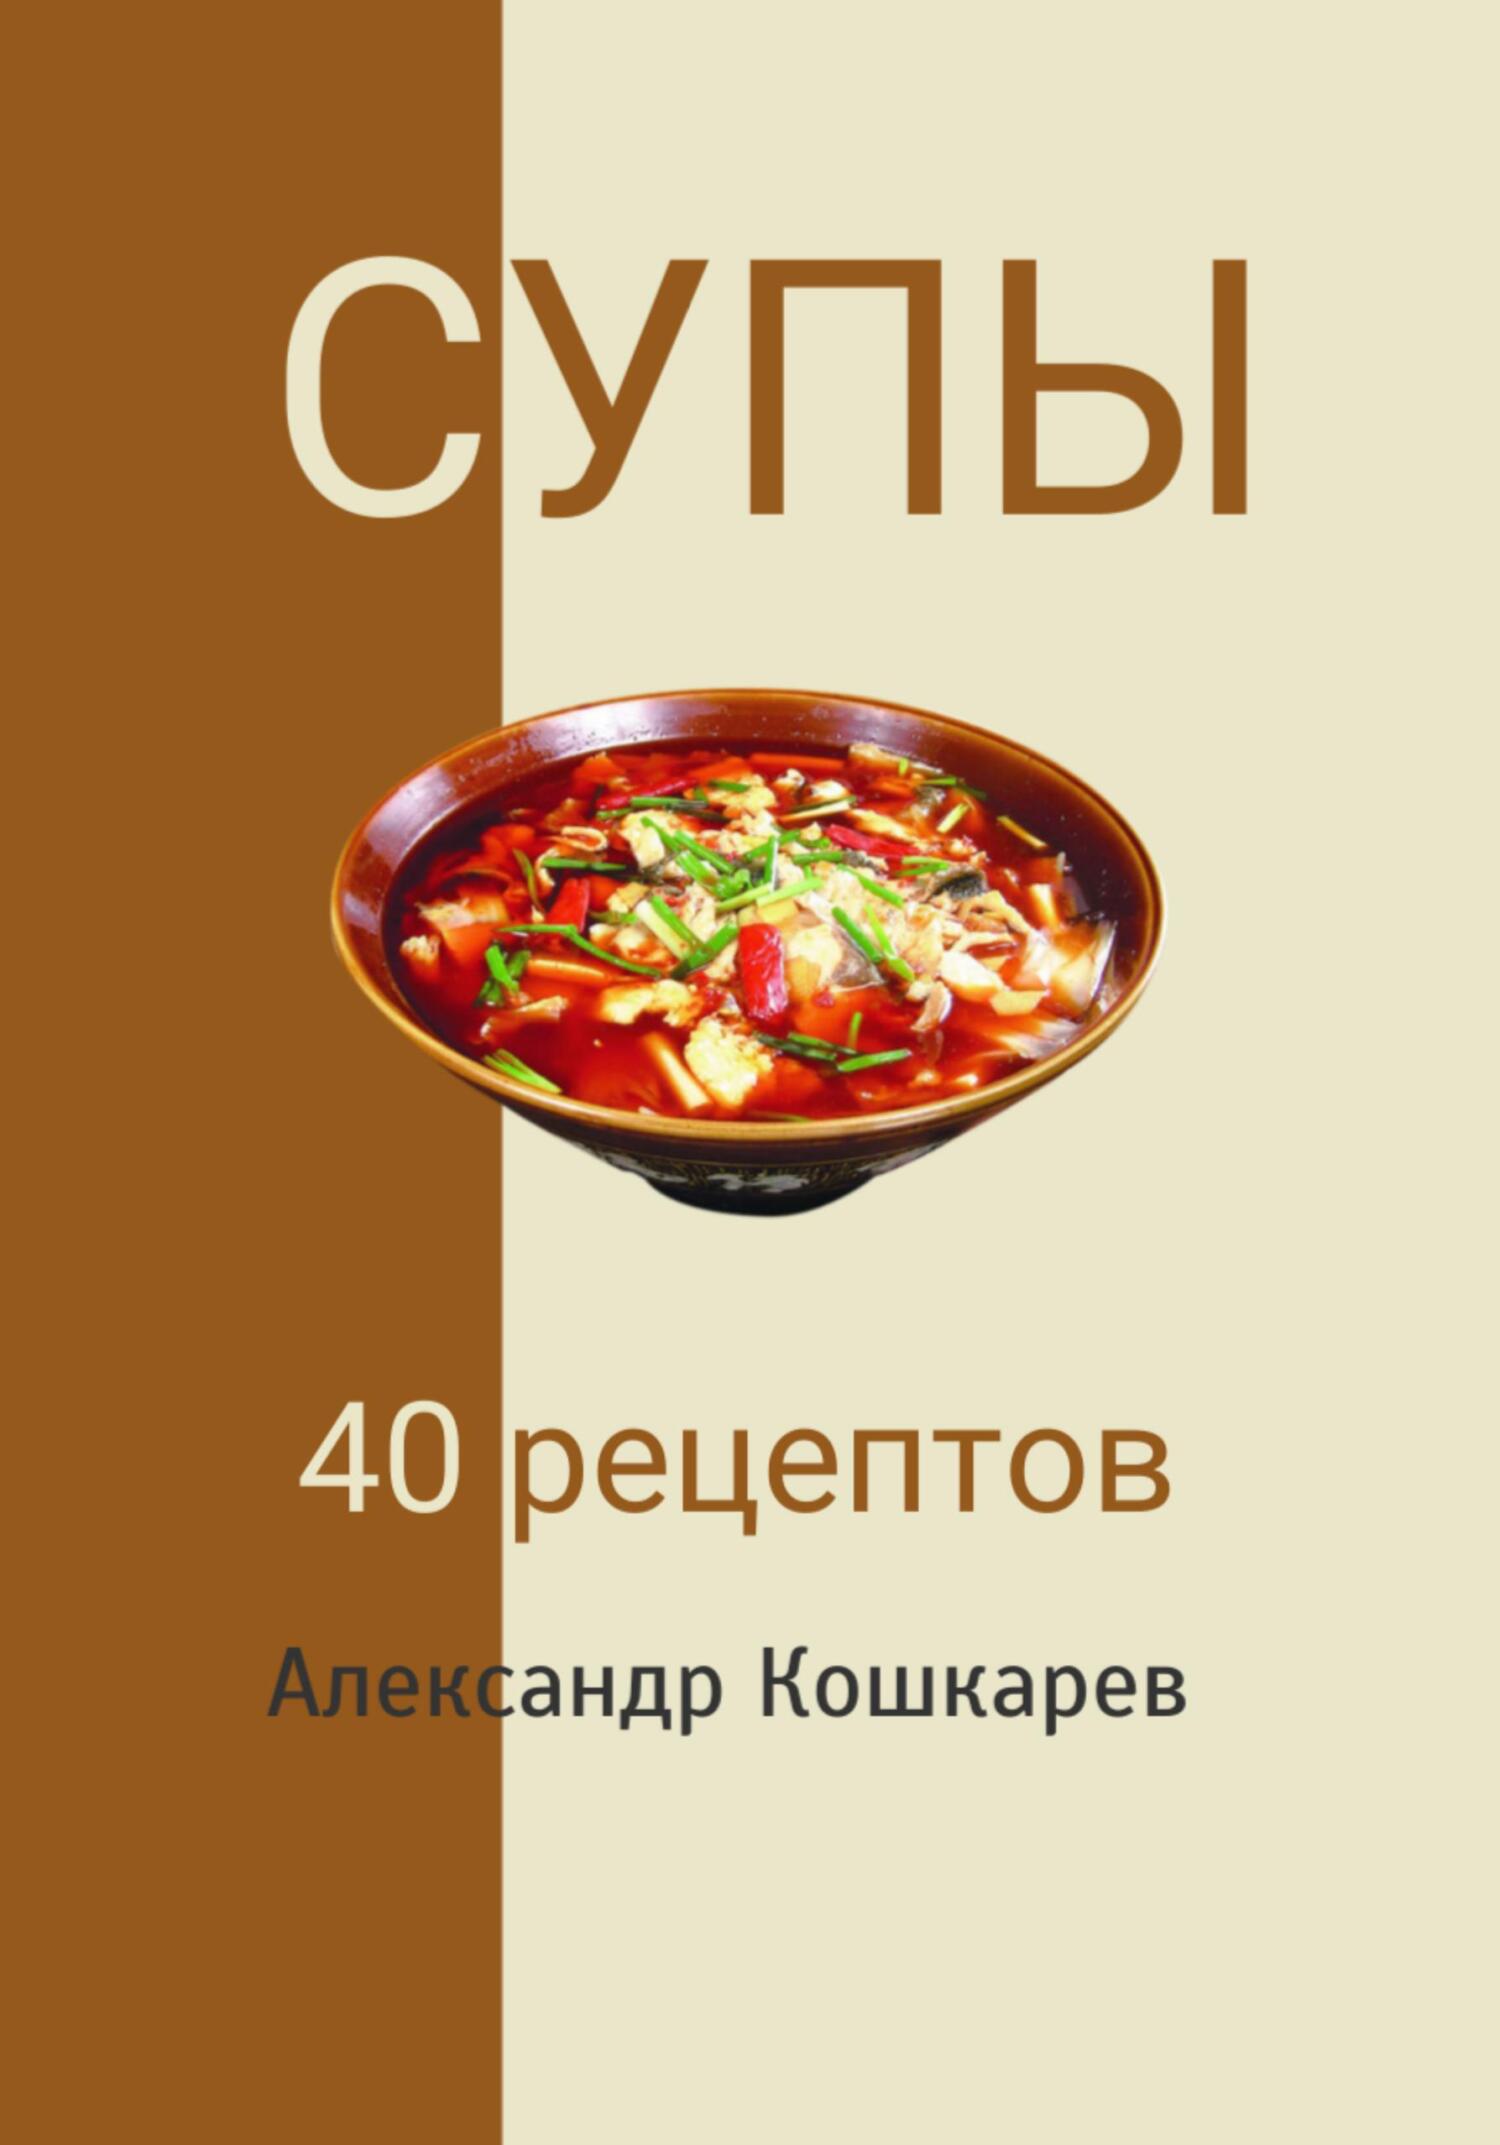 5 легких салатов от Юлии Высоцкой